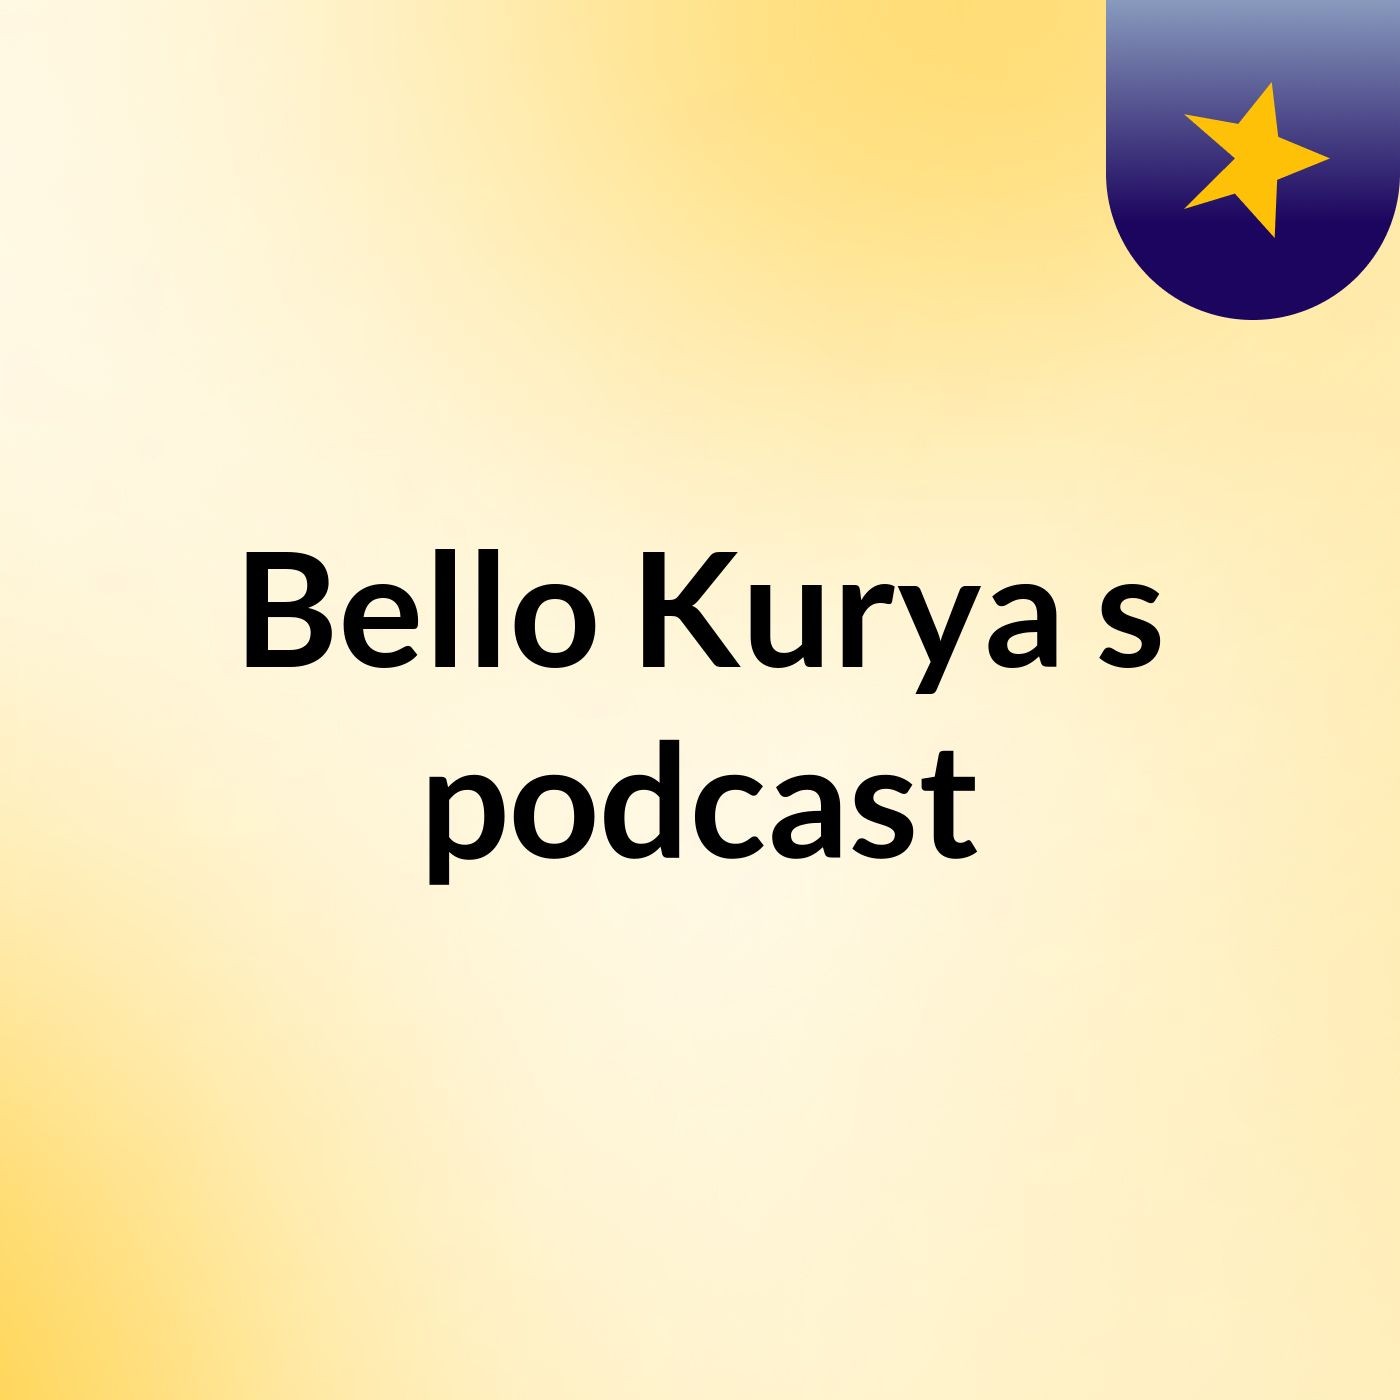 Bello Kurya's podcast